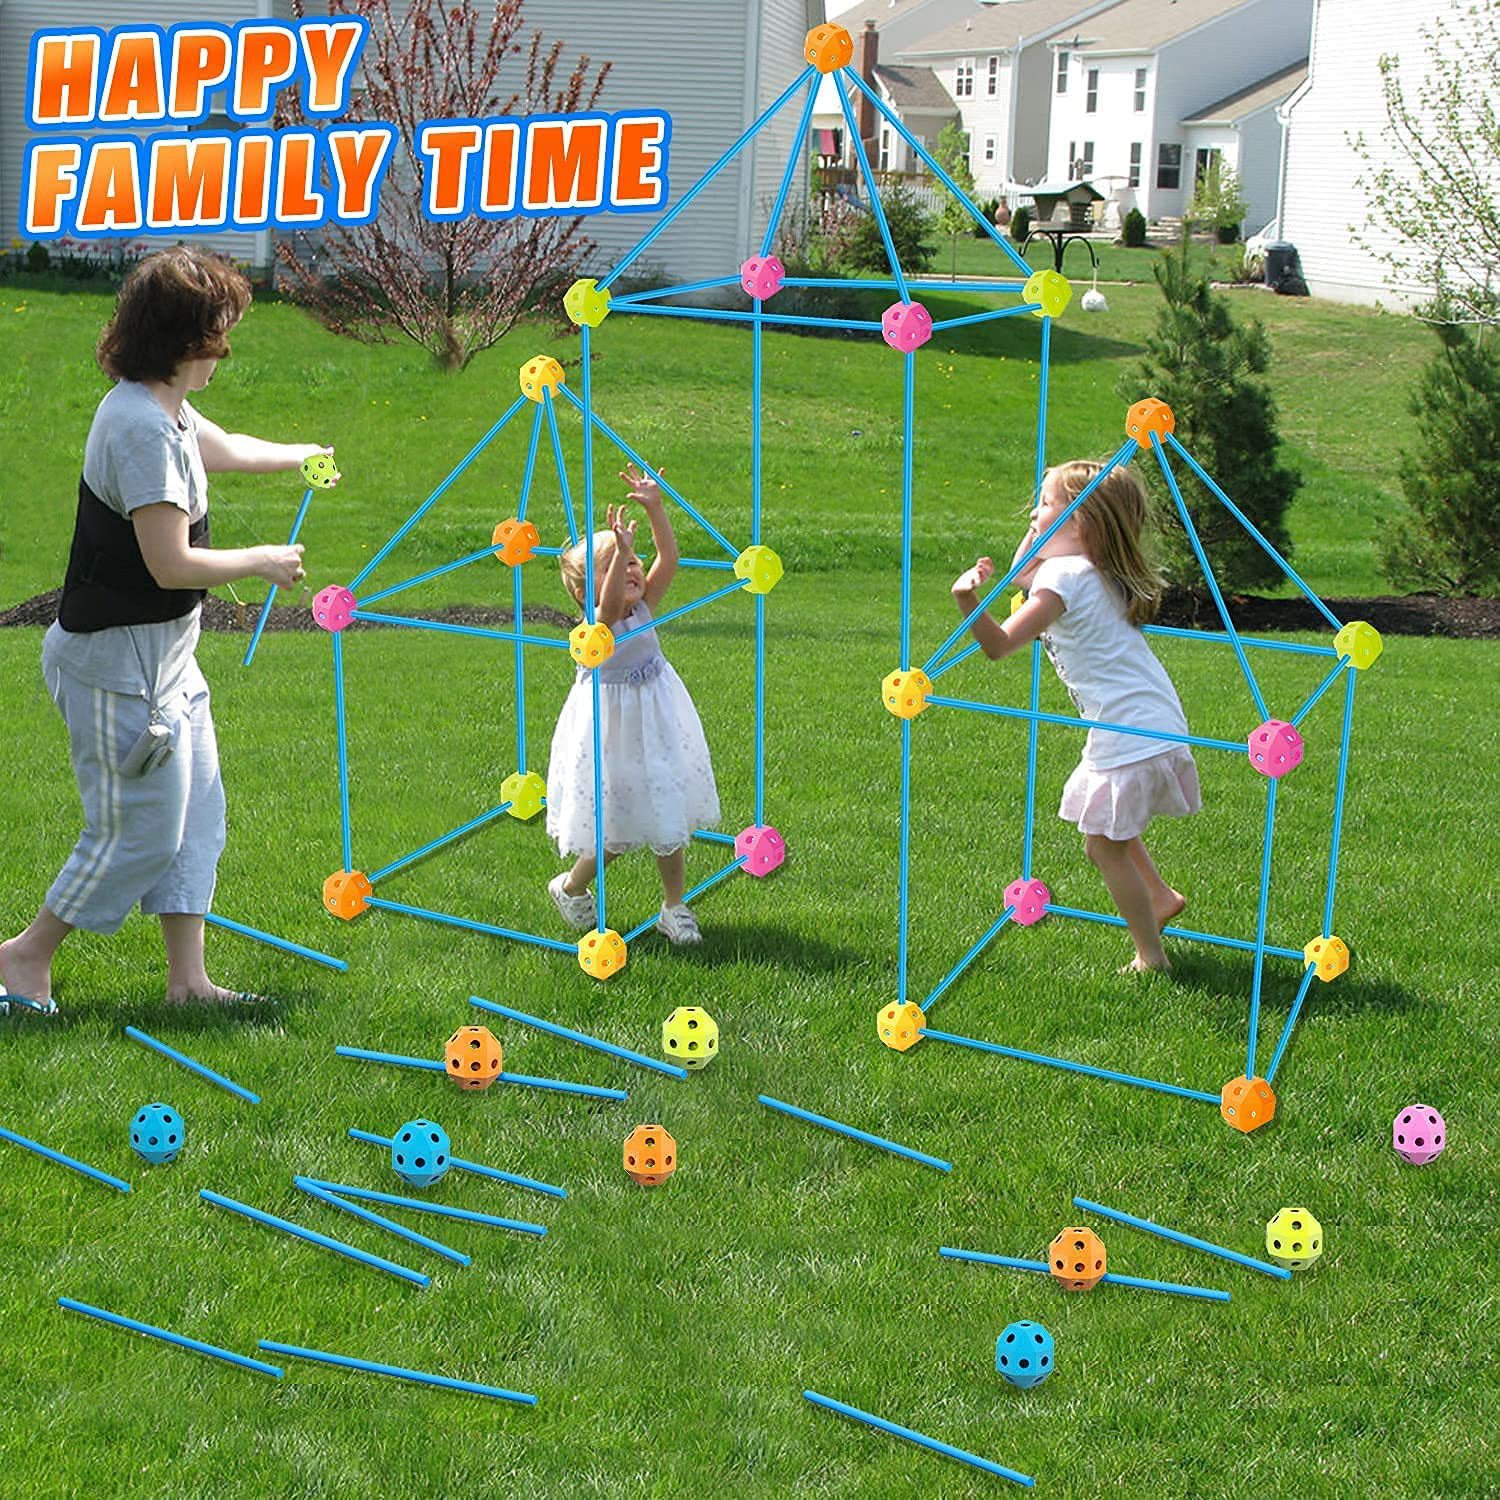 InfinityBlox: Das DIY multifunktionale Ball-Einsetzen Lernspielzeug, ein Universum der Kreativität und Bildung für Kleinkinder. Geeignet ab 3 Jahren, fördert es motorische und kognitive Fähigkeiten sowie interaktive Intelligenz-7.jpg